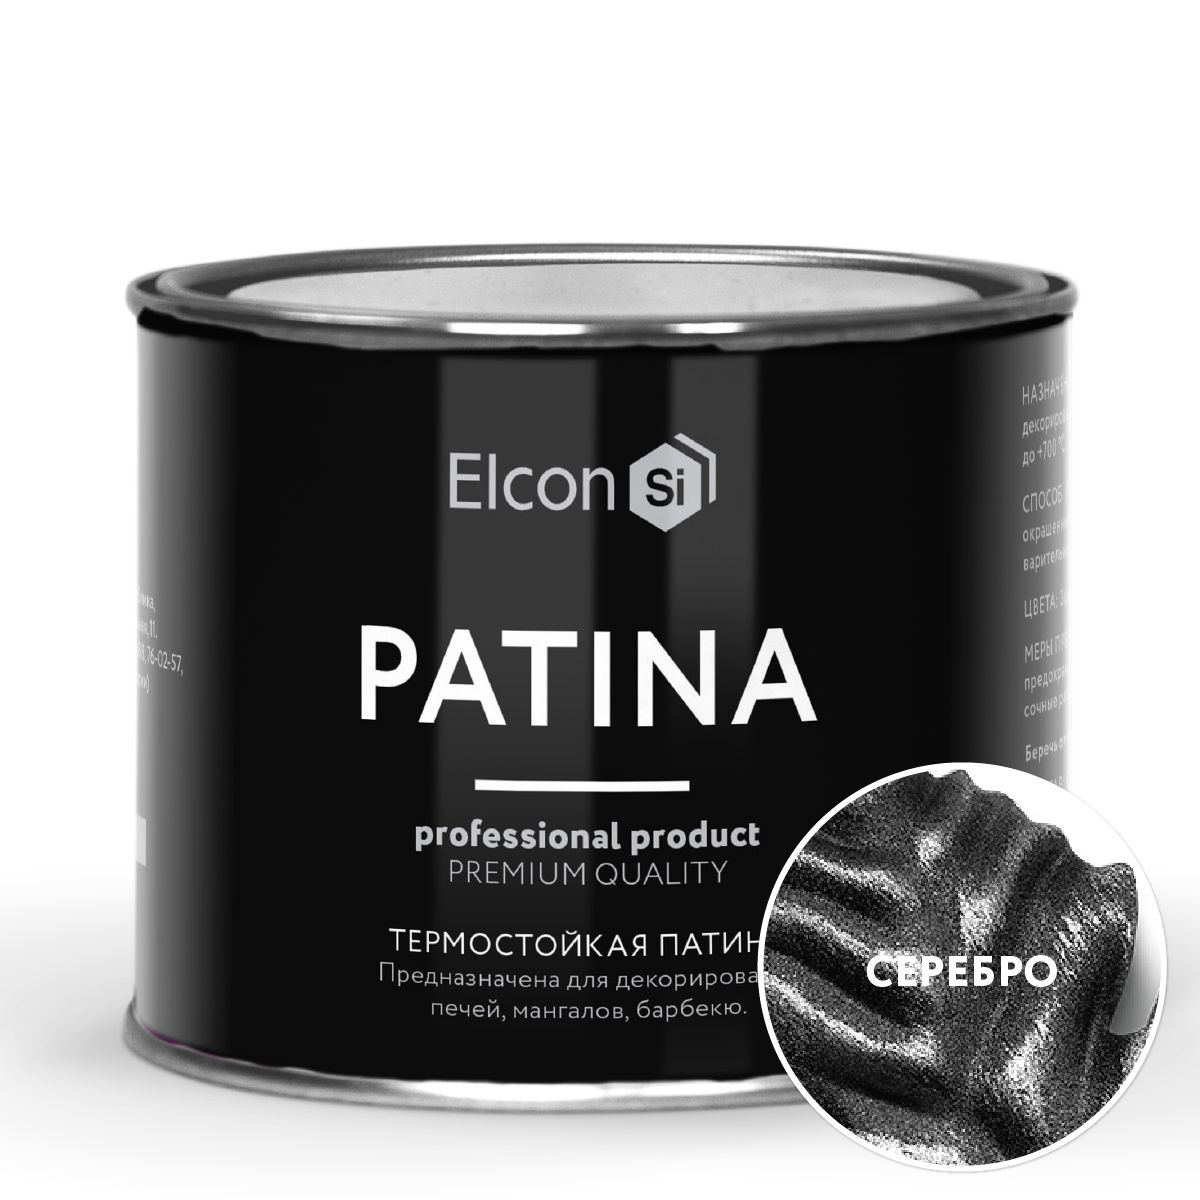 Термостойкая патина Elcon Patina +700 Серебро 0,2 кг патина certa термостойкая до 700°с серебро 80 г